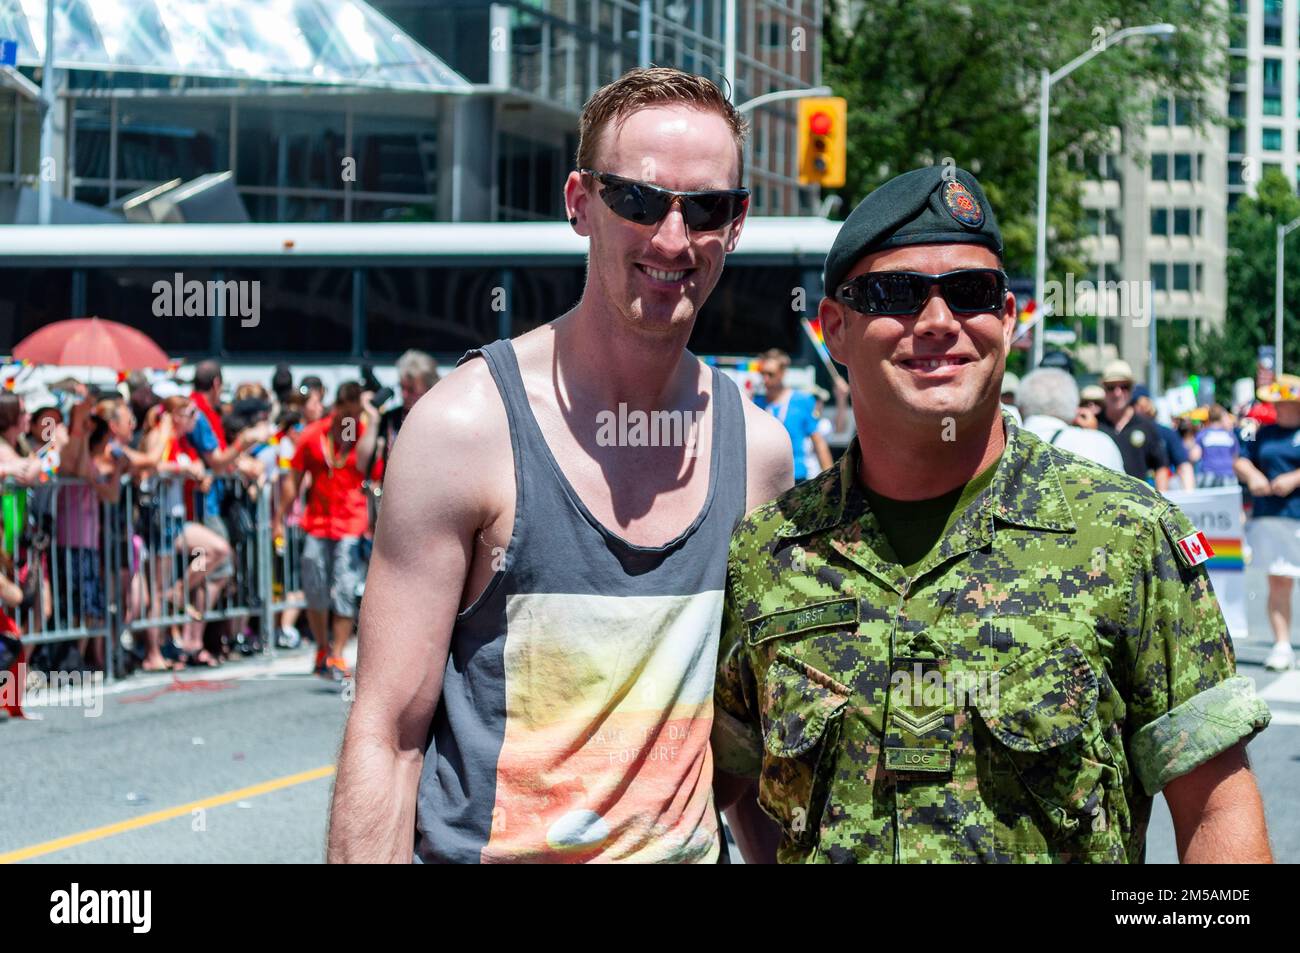 Ritratto di due persone. Uno di loro indossa un'uniforme delle forze armate canadesi. Foto Stock